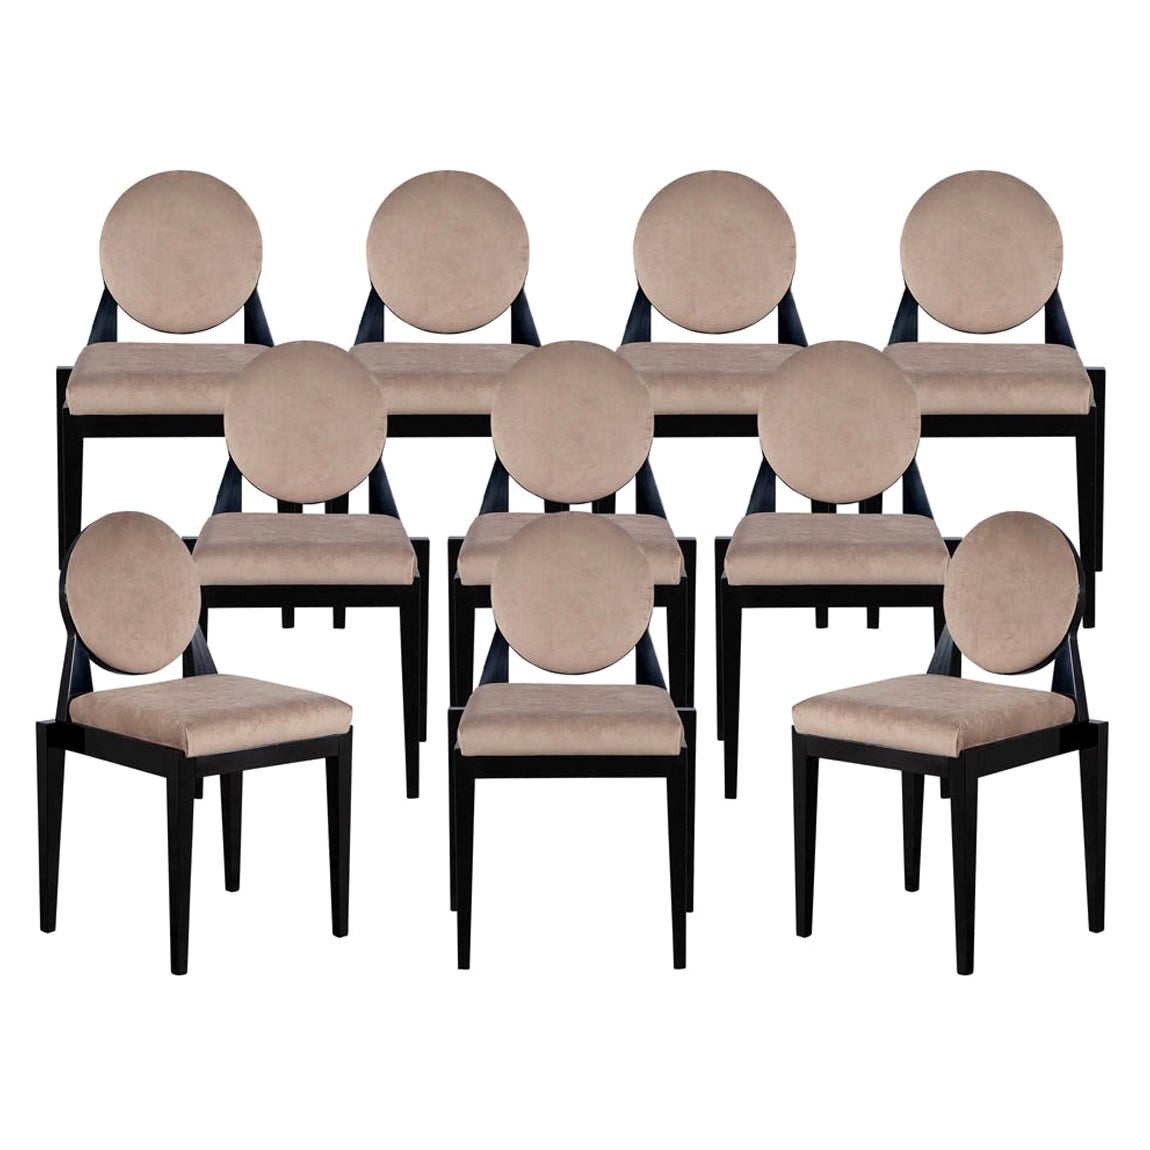 Ensemble de 10 chaises de salle à manger modernes à dossier rond personnalisées Arrondi